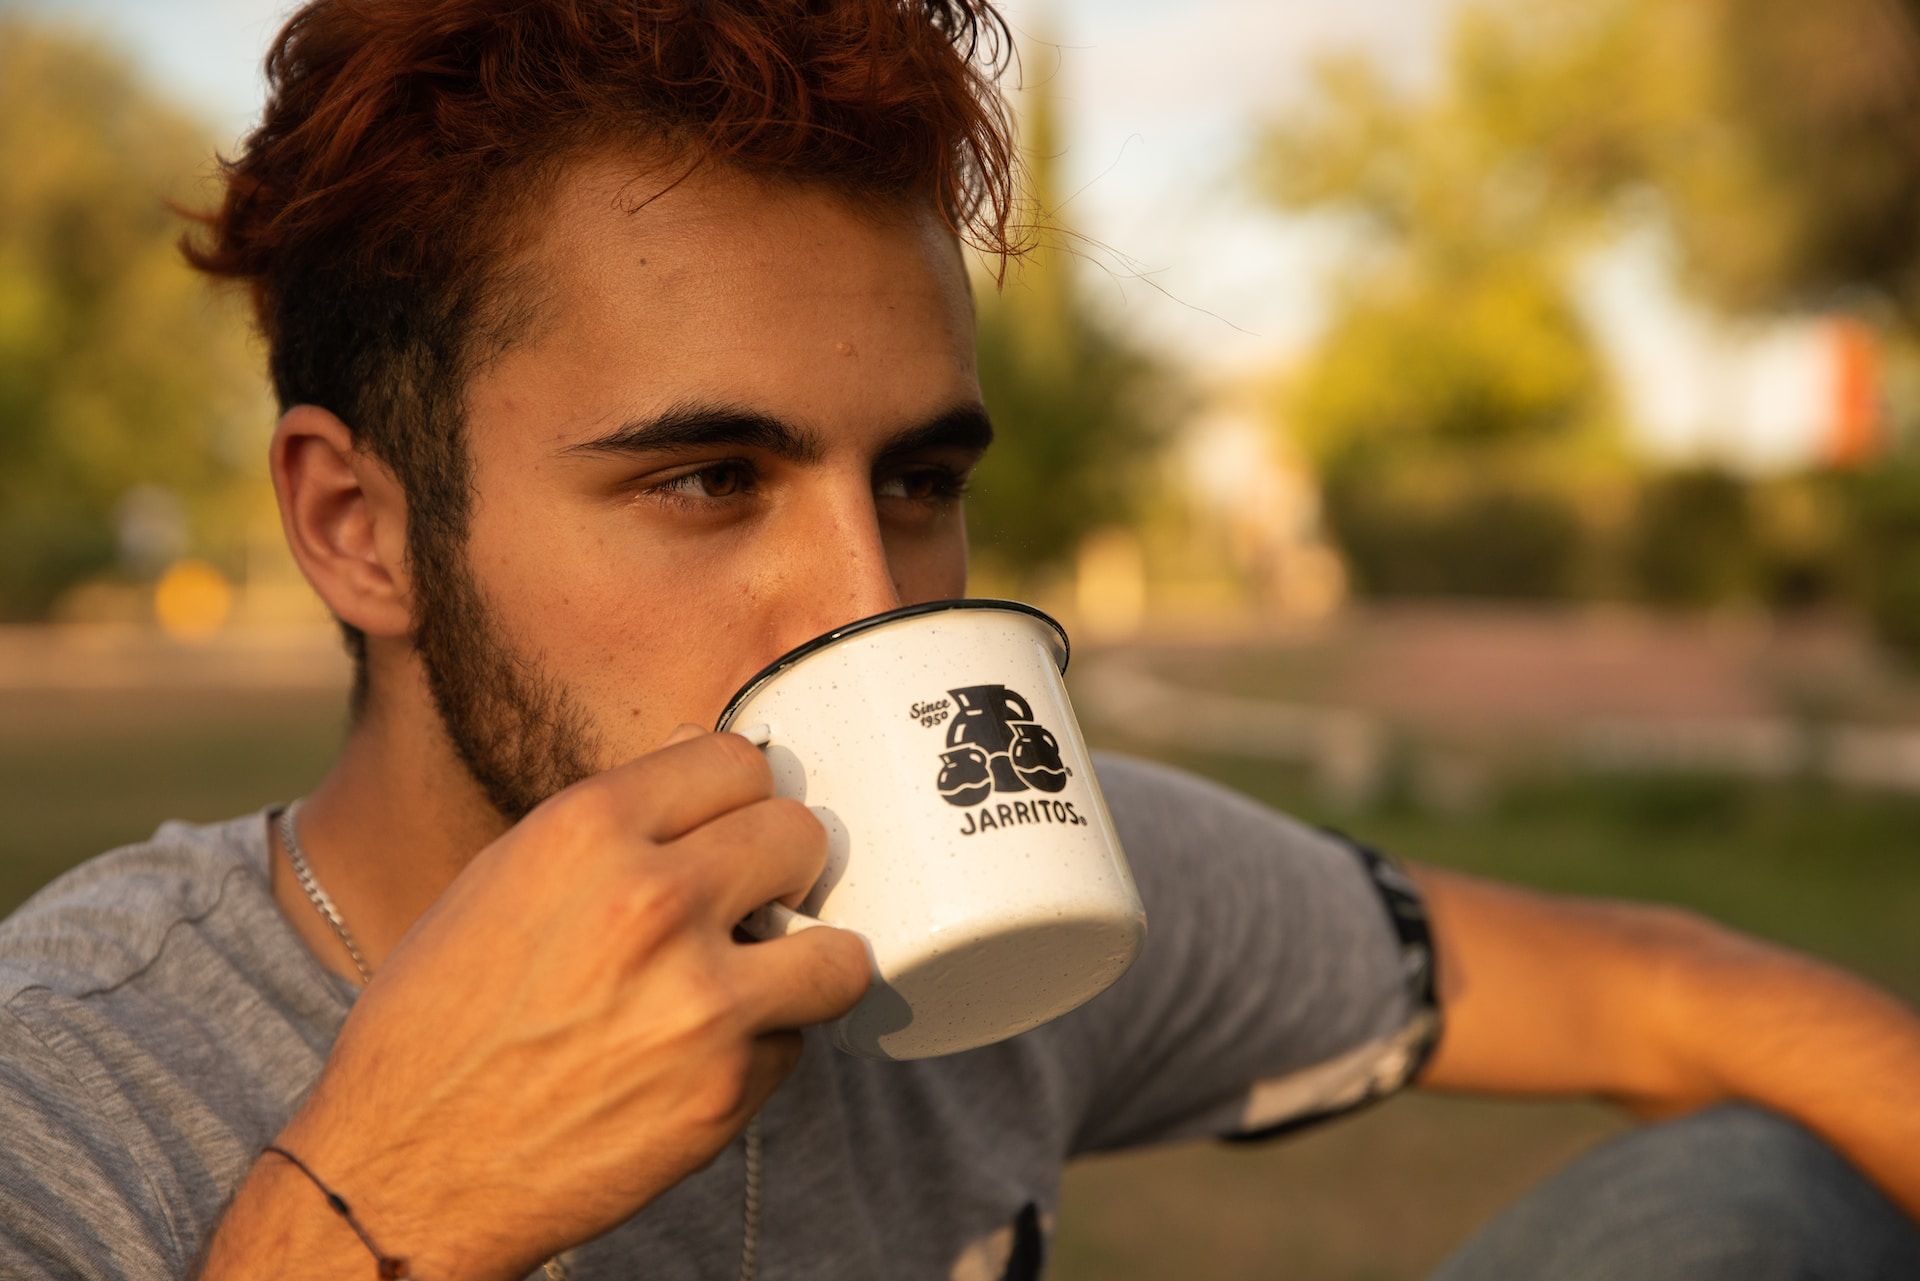 Un jeune homme buvant une tasse de café - Photo de Jarritos Mexican Soda sur https://unsplash.com/fr/photos/TfqM6Kg2Rh4